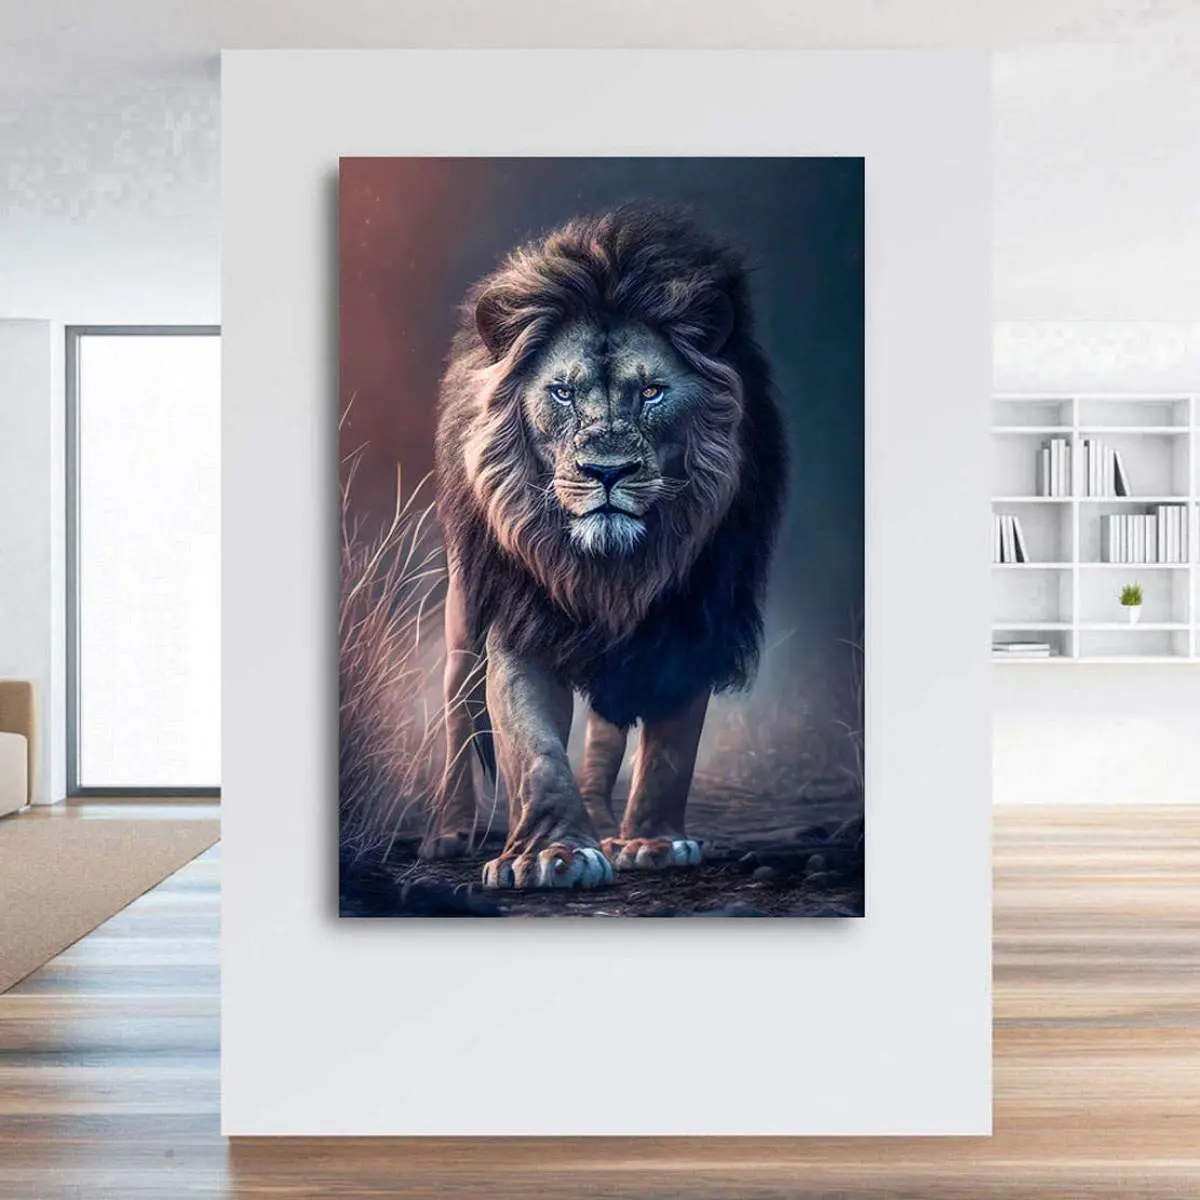 Löwen Leinwandbild von Kunstgestalten24